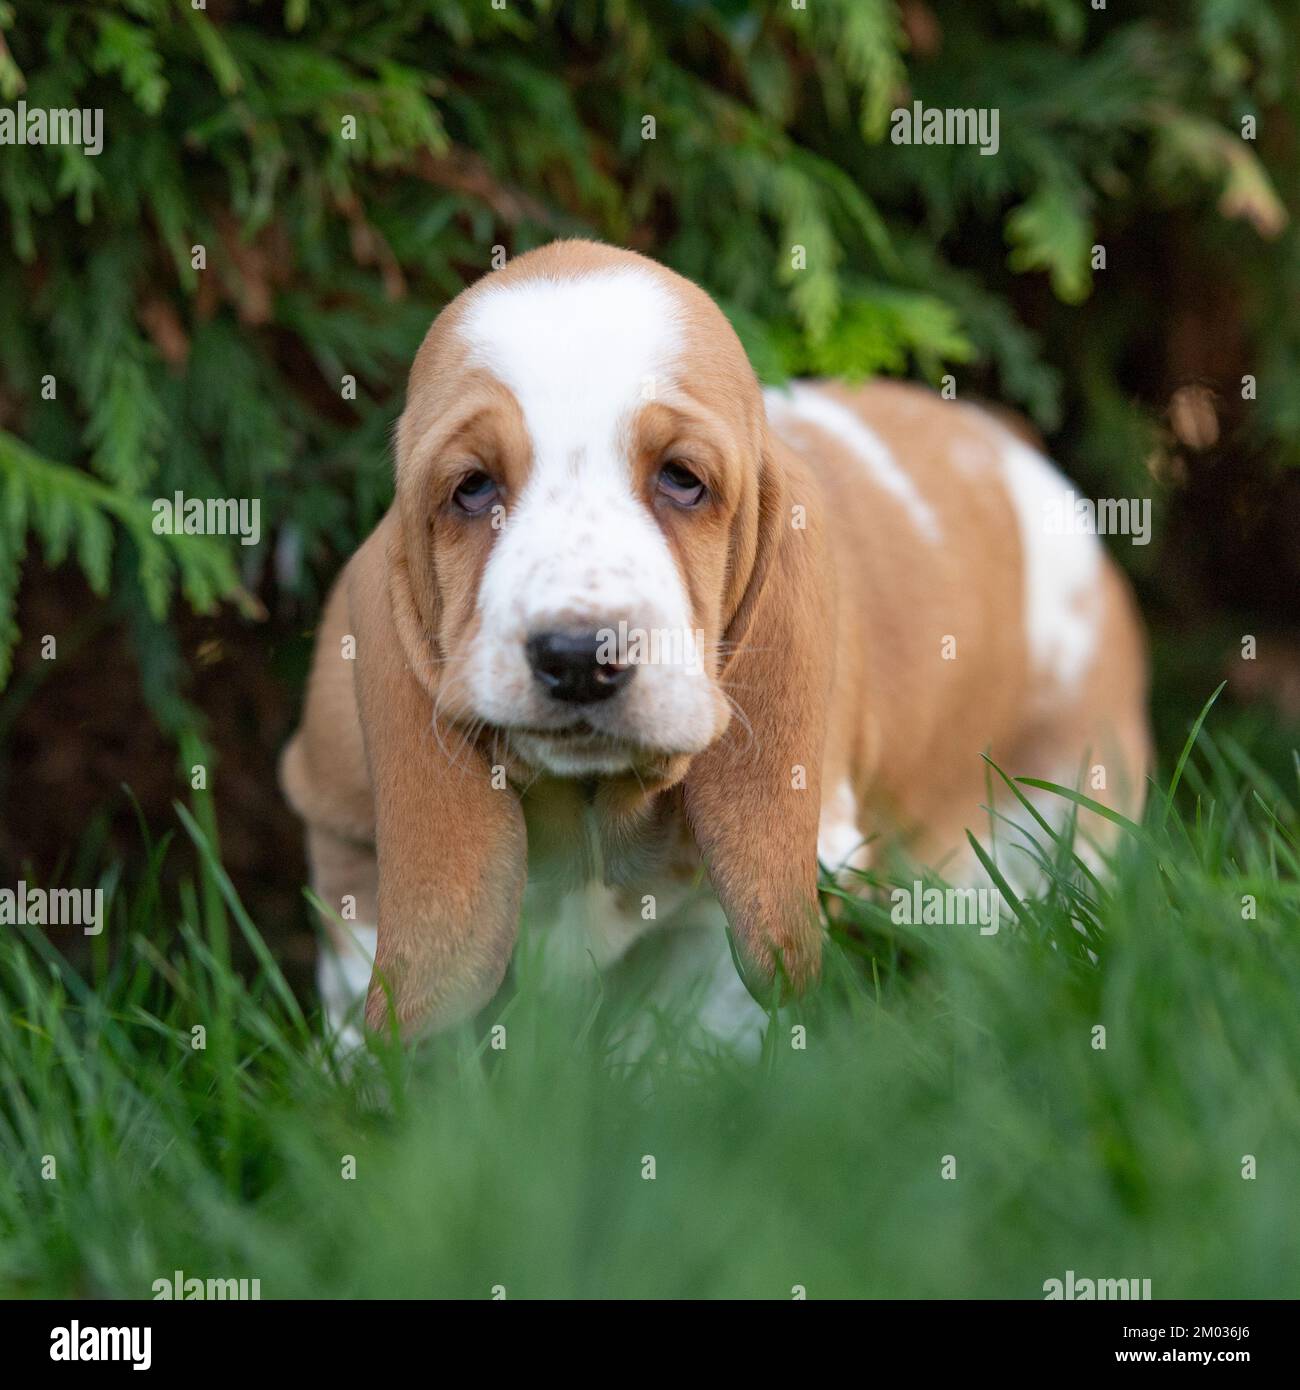 basset hound puppy Stock Photo